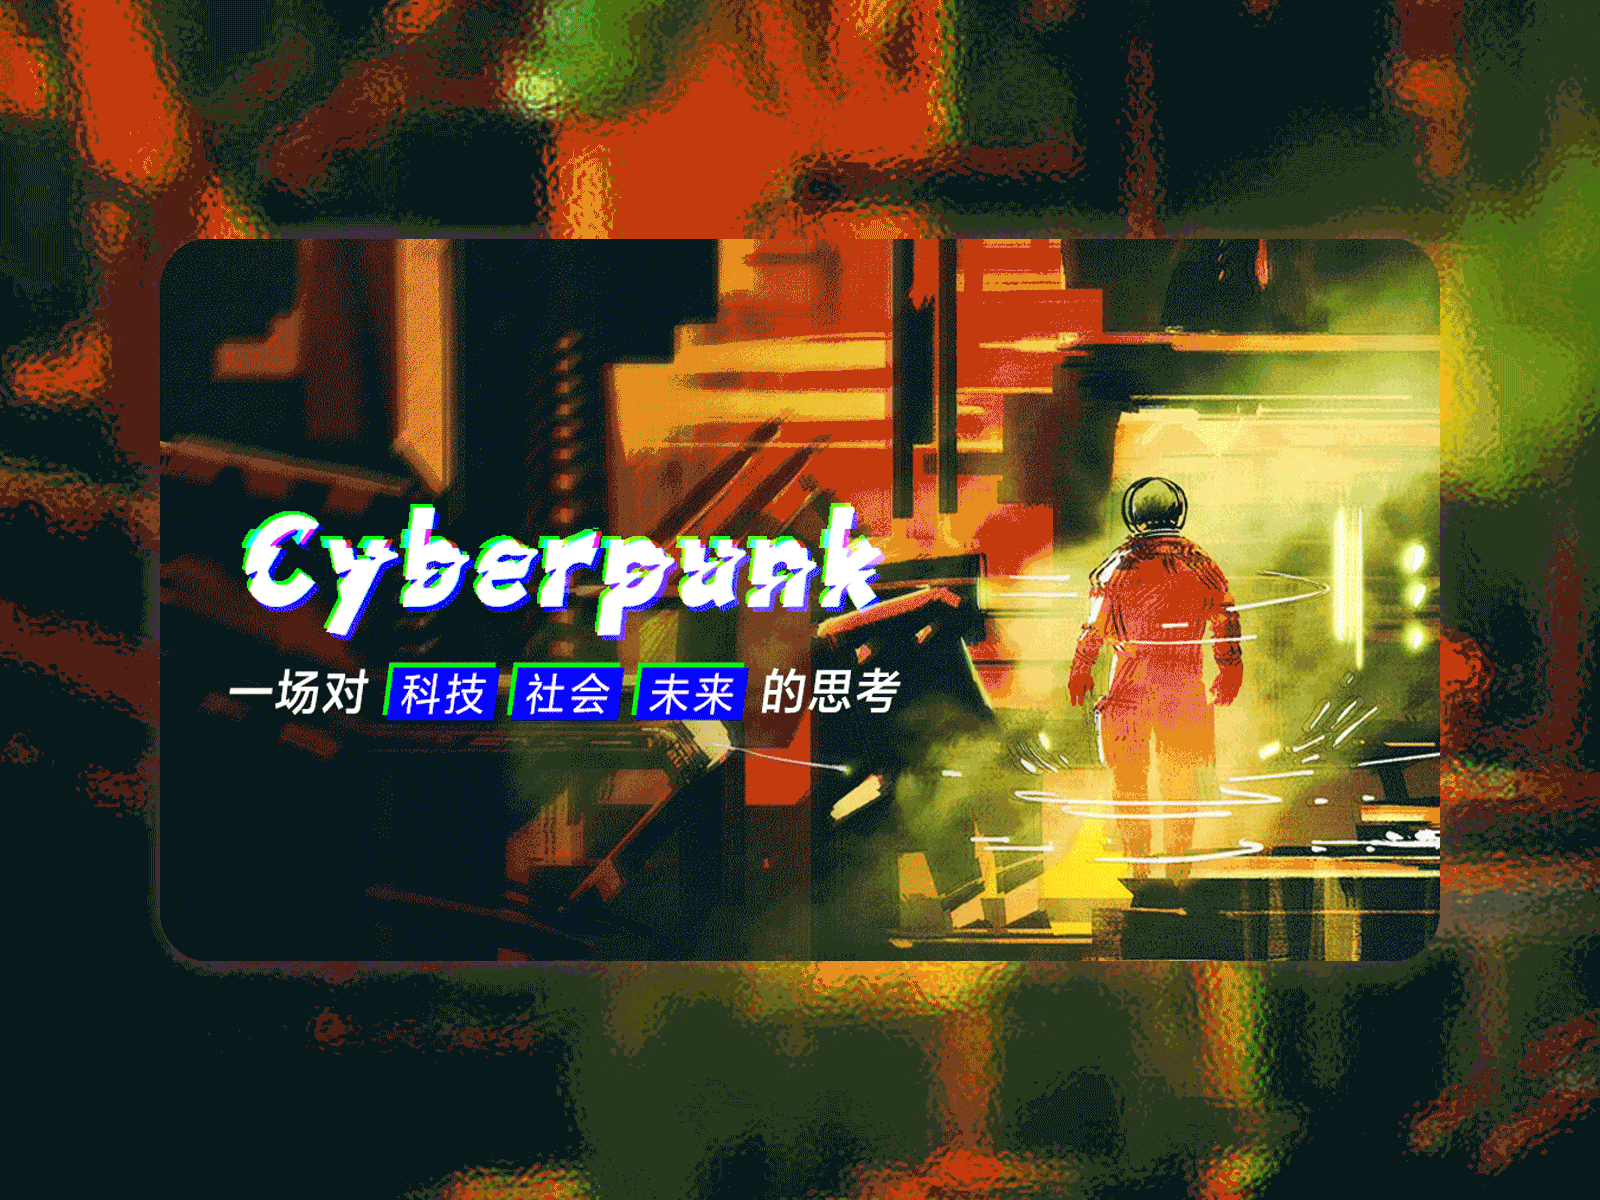 Malfunctioning Cyberpunk Banner annimation banner cyberpunk dynamic ui